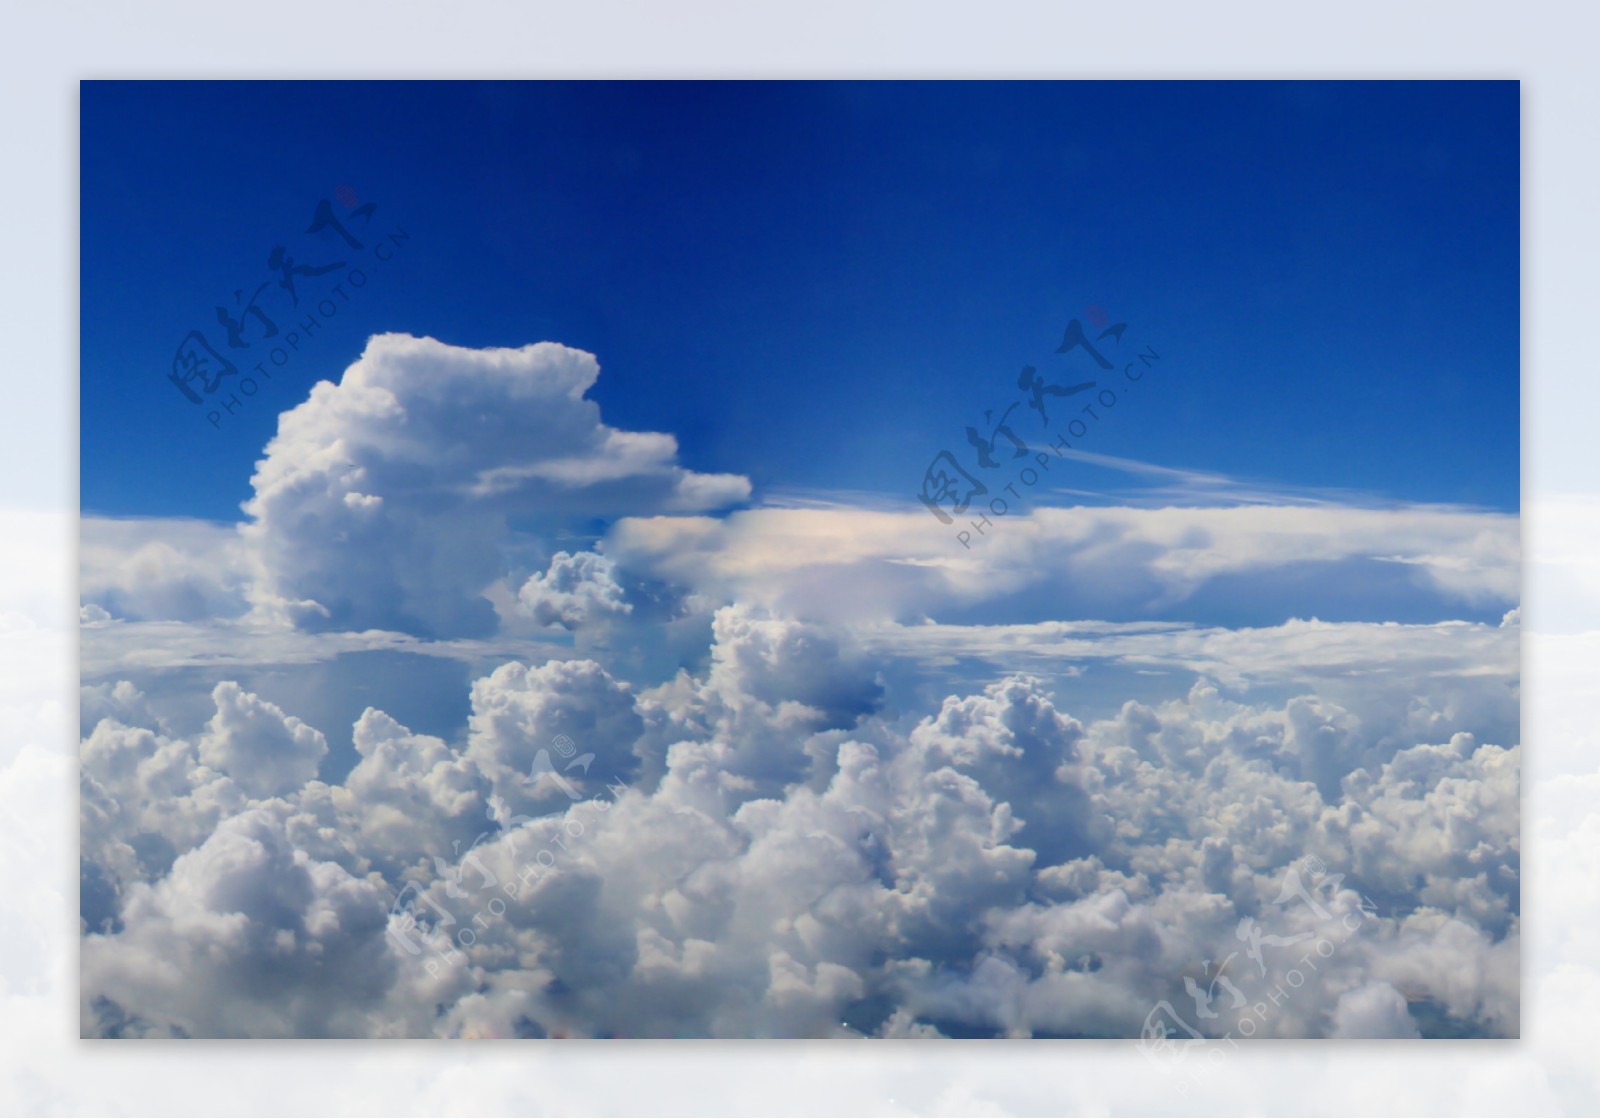 蓝天白云云朵图片